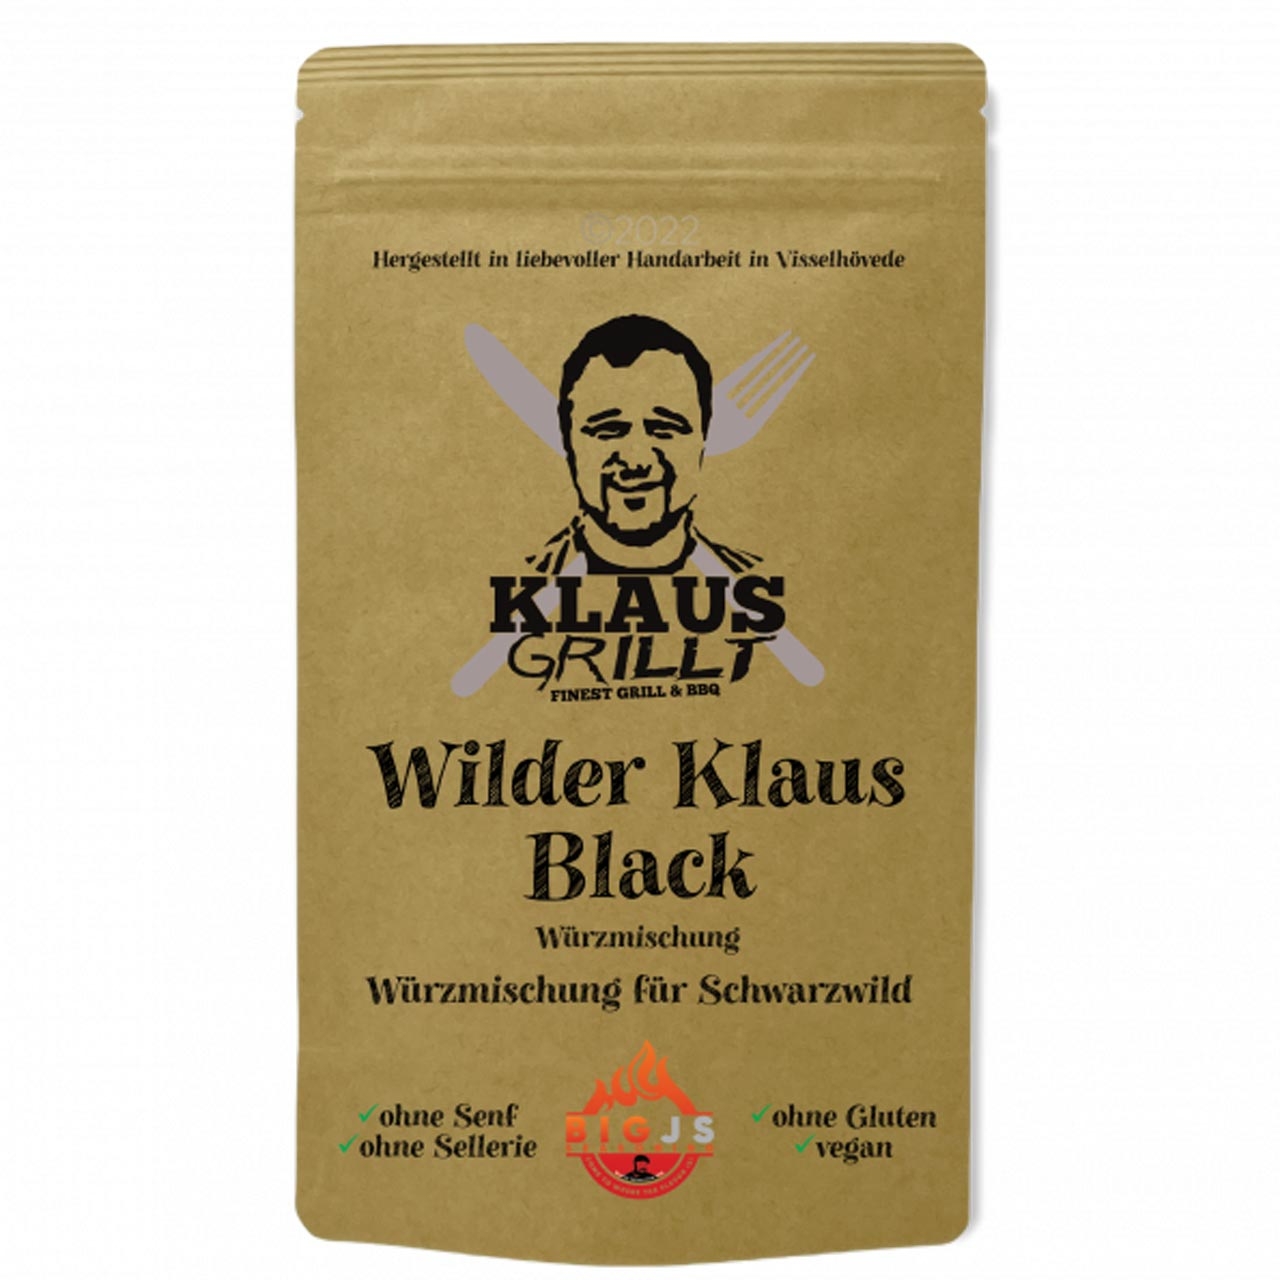 Klaus Grillt - Wilder Klaus Black 150 g Standbeutel